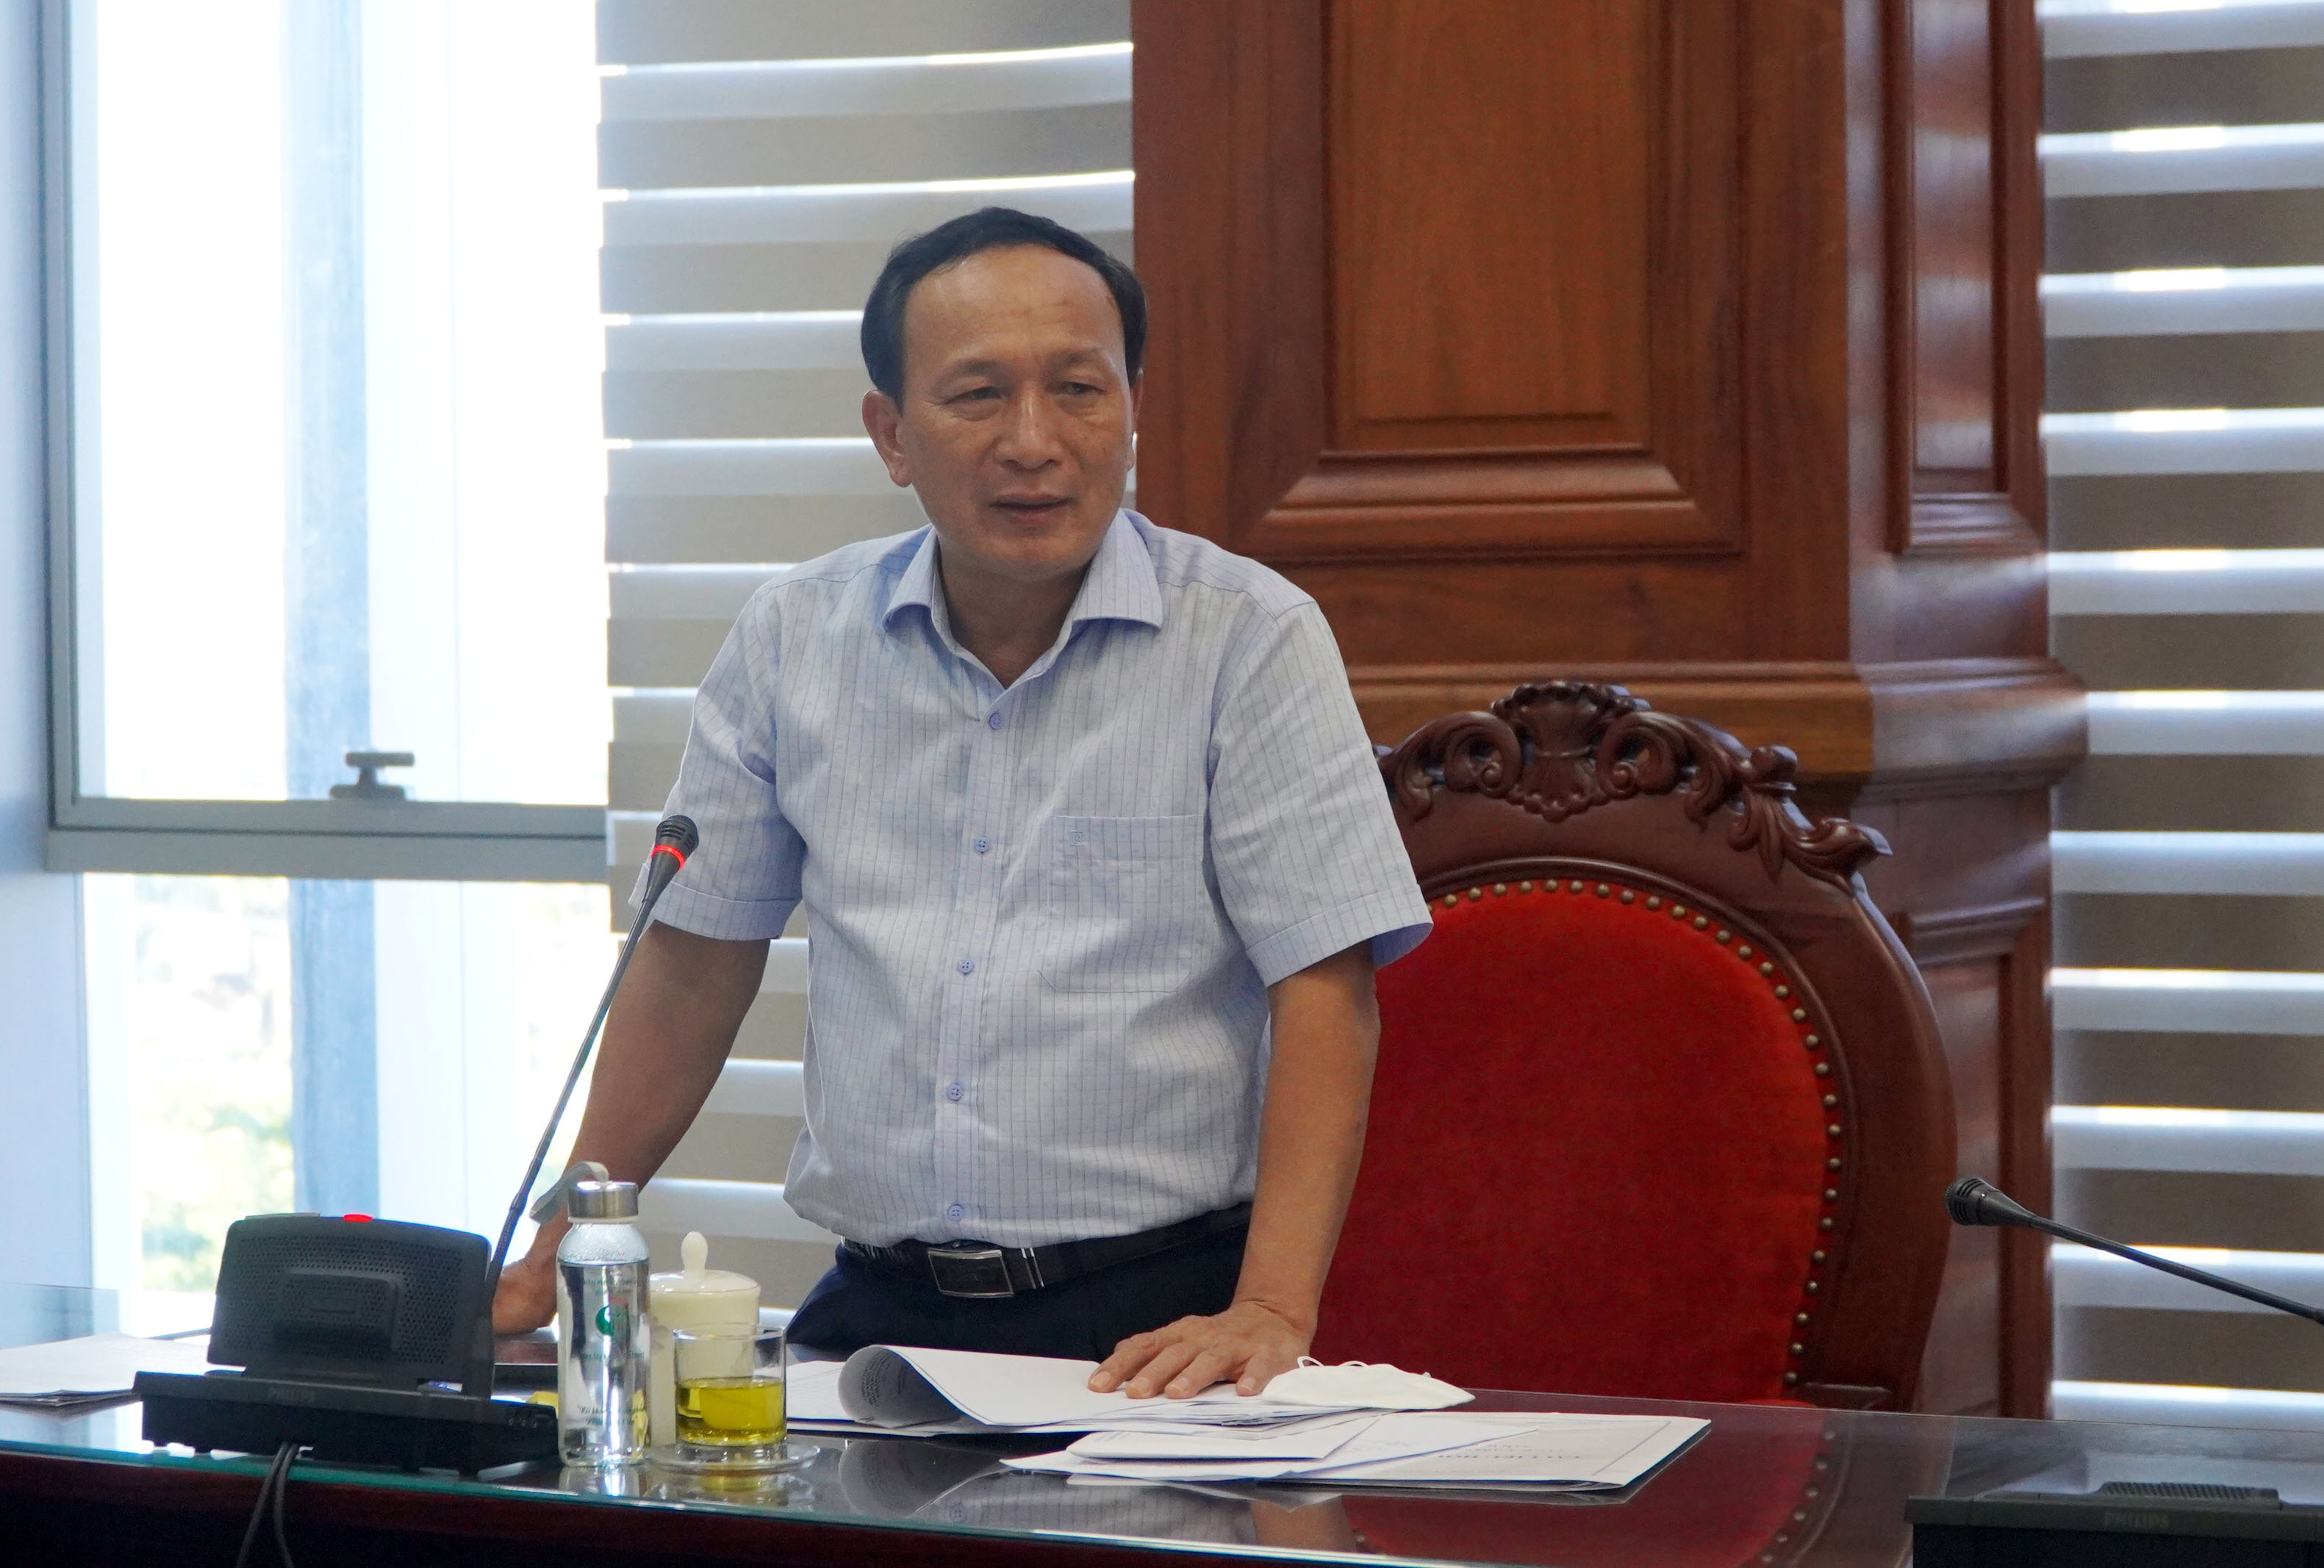 Đồng chí Trần Hải Châu, Phó Bí thư Thường trực Tỉnh ủy, Chủ tịch HĐND tỉnh phát biểu tại buổi họp.